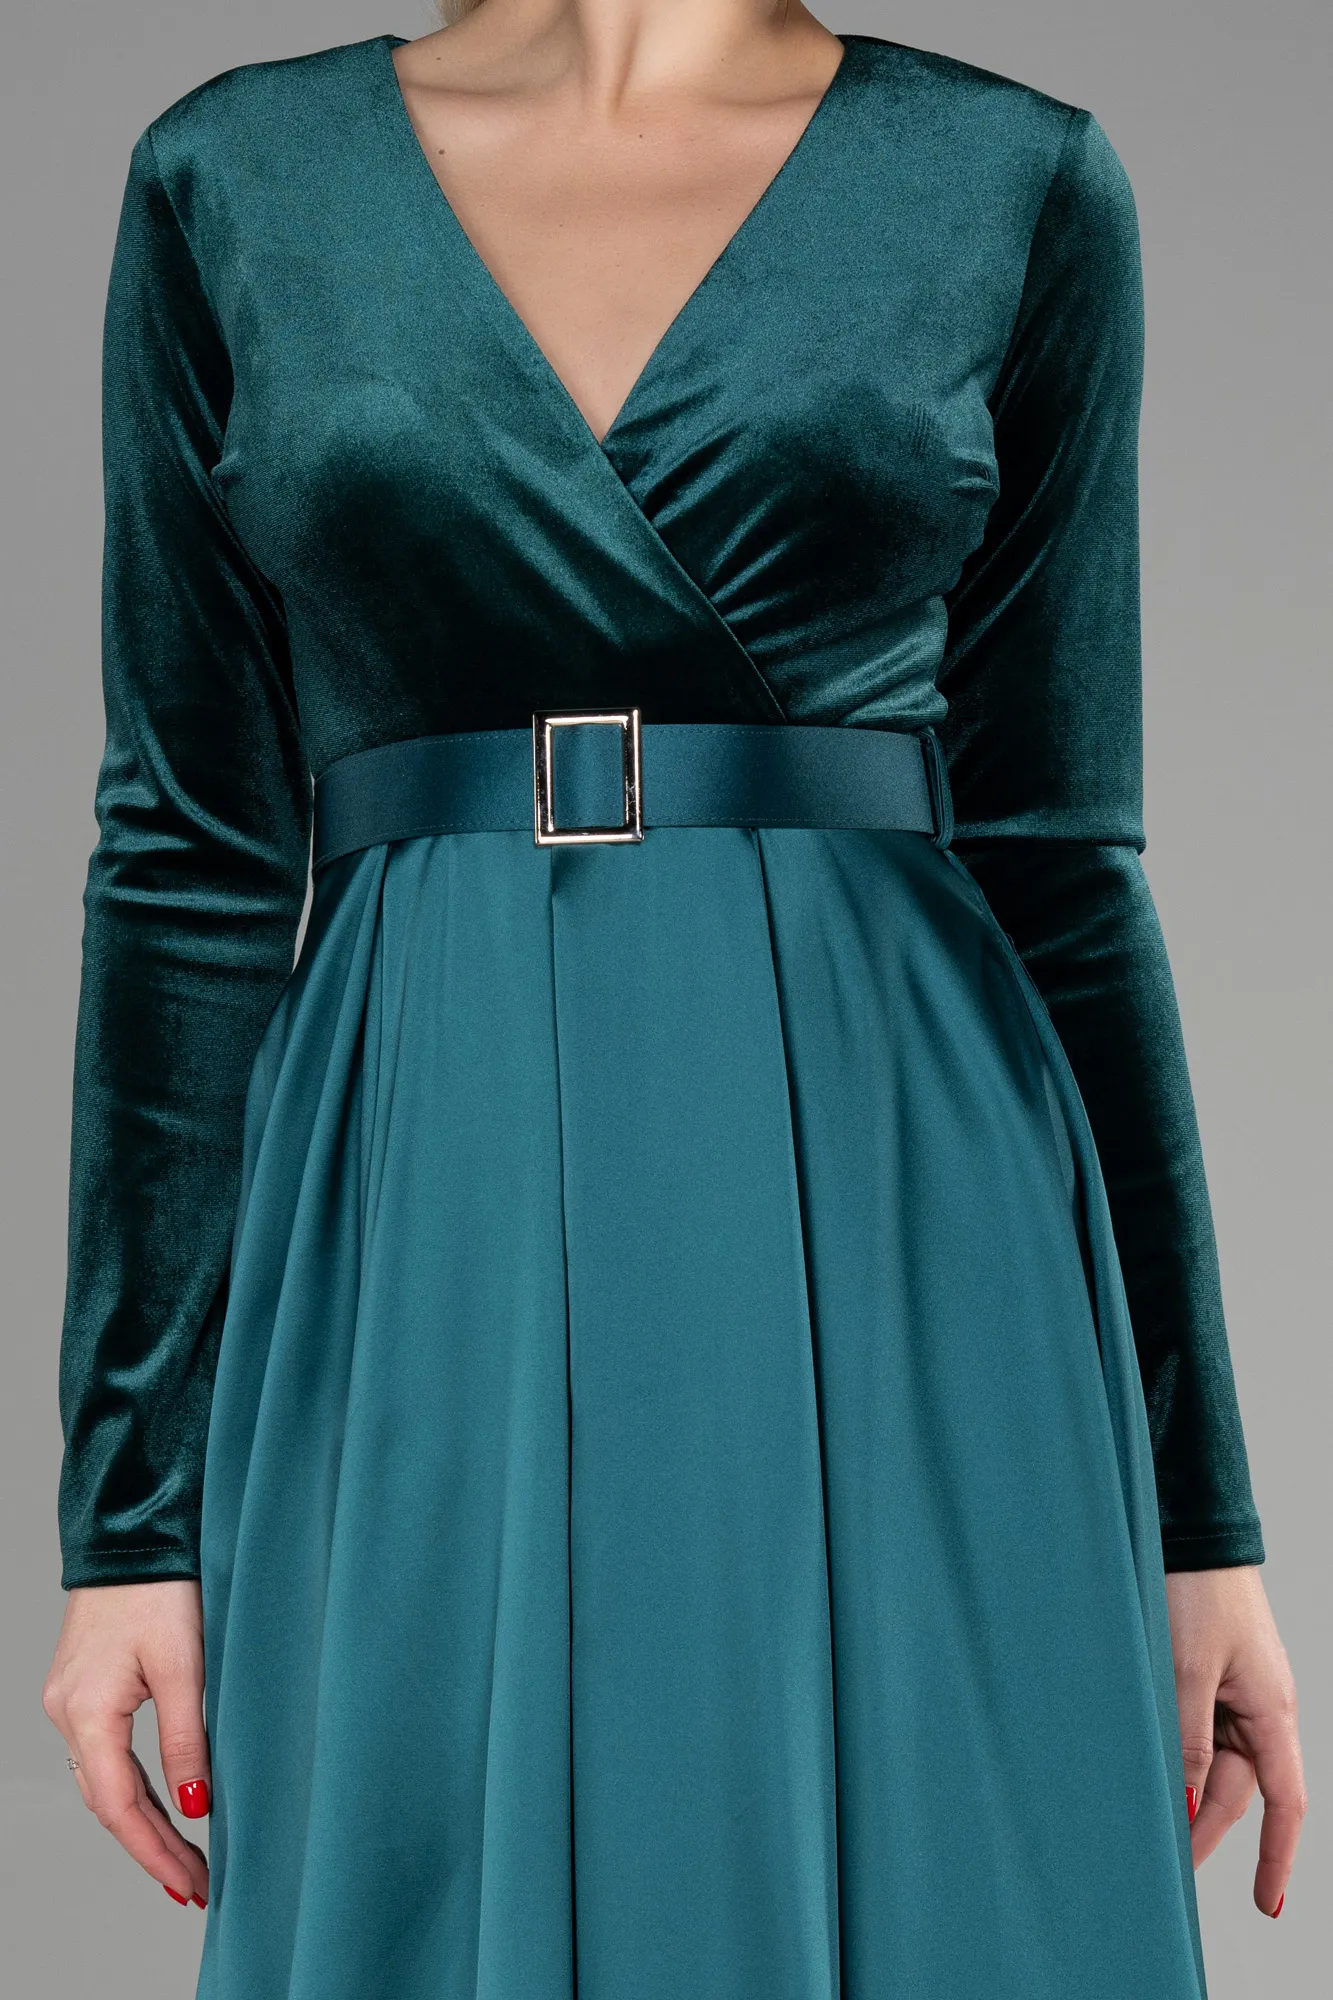 Emerald Green-Long Velvet Evening Dress ABU1523